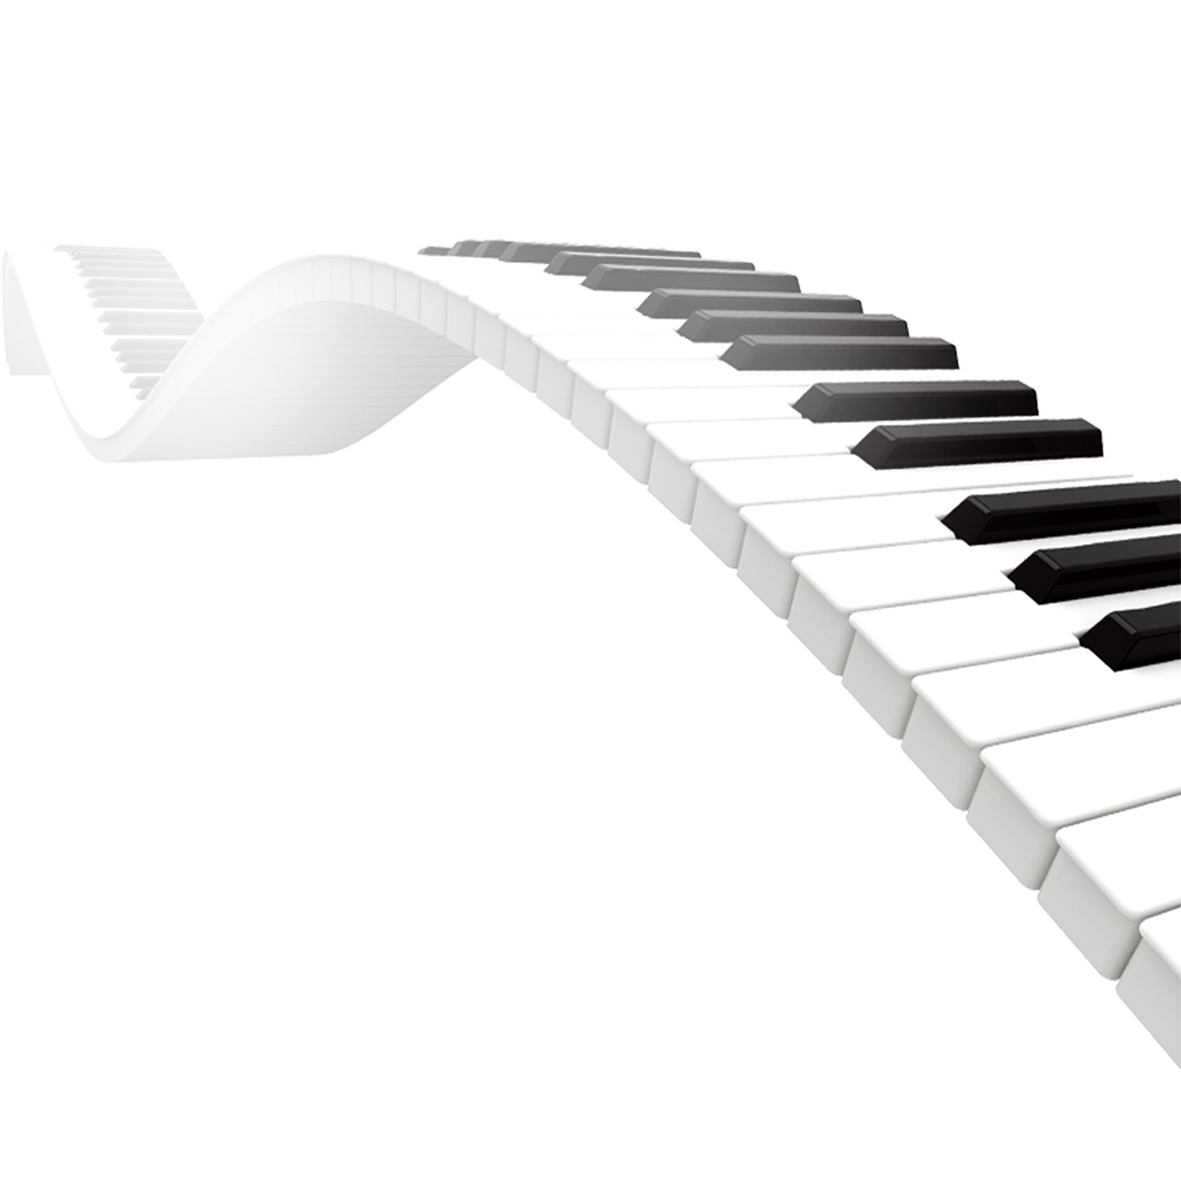 Piano musik keyboard PNG Pic